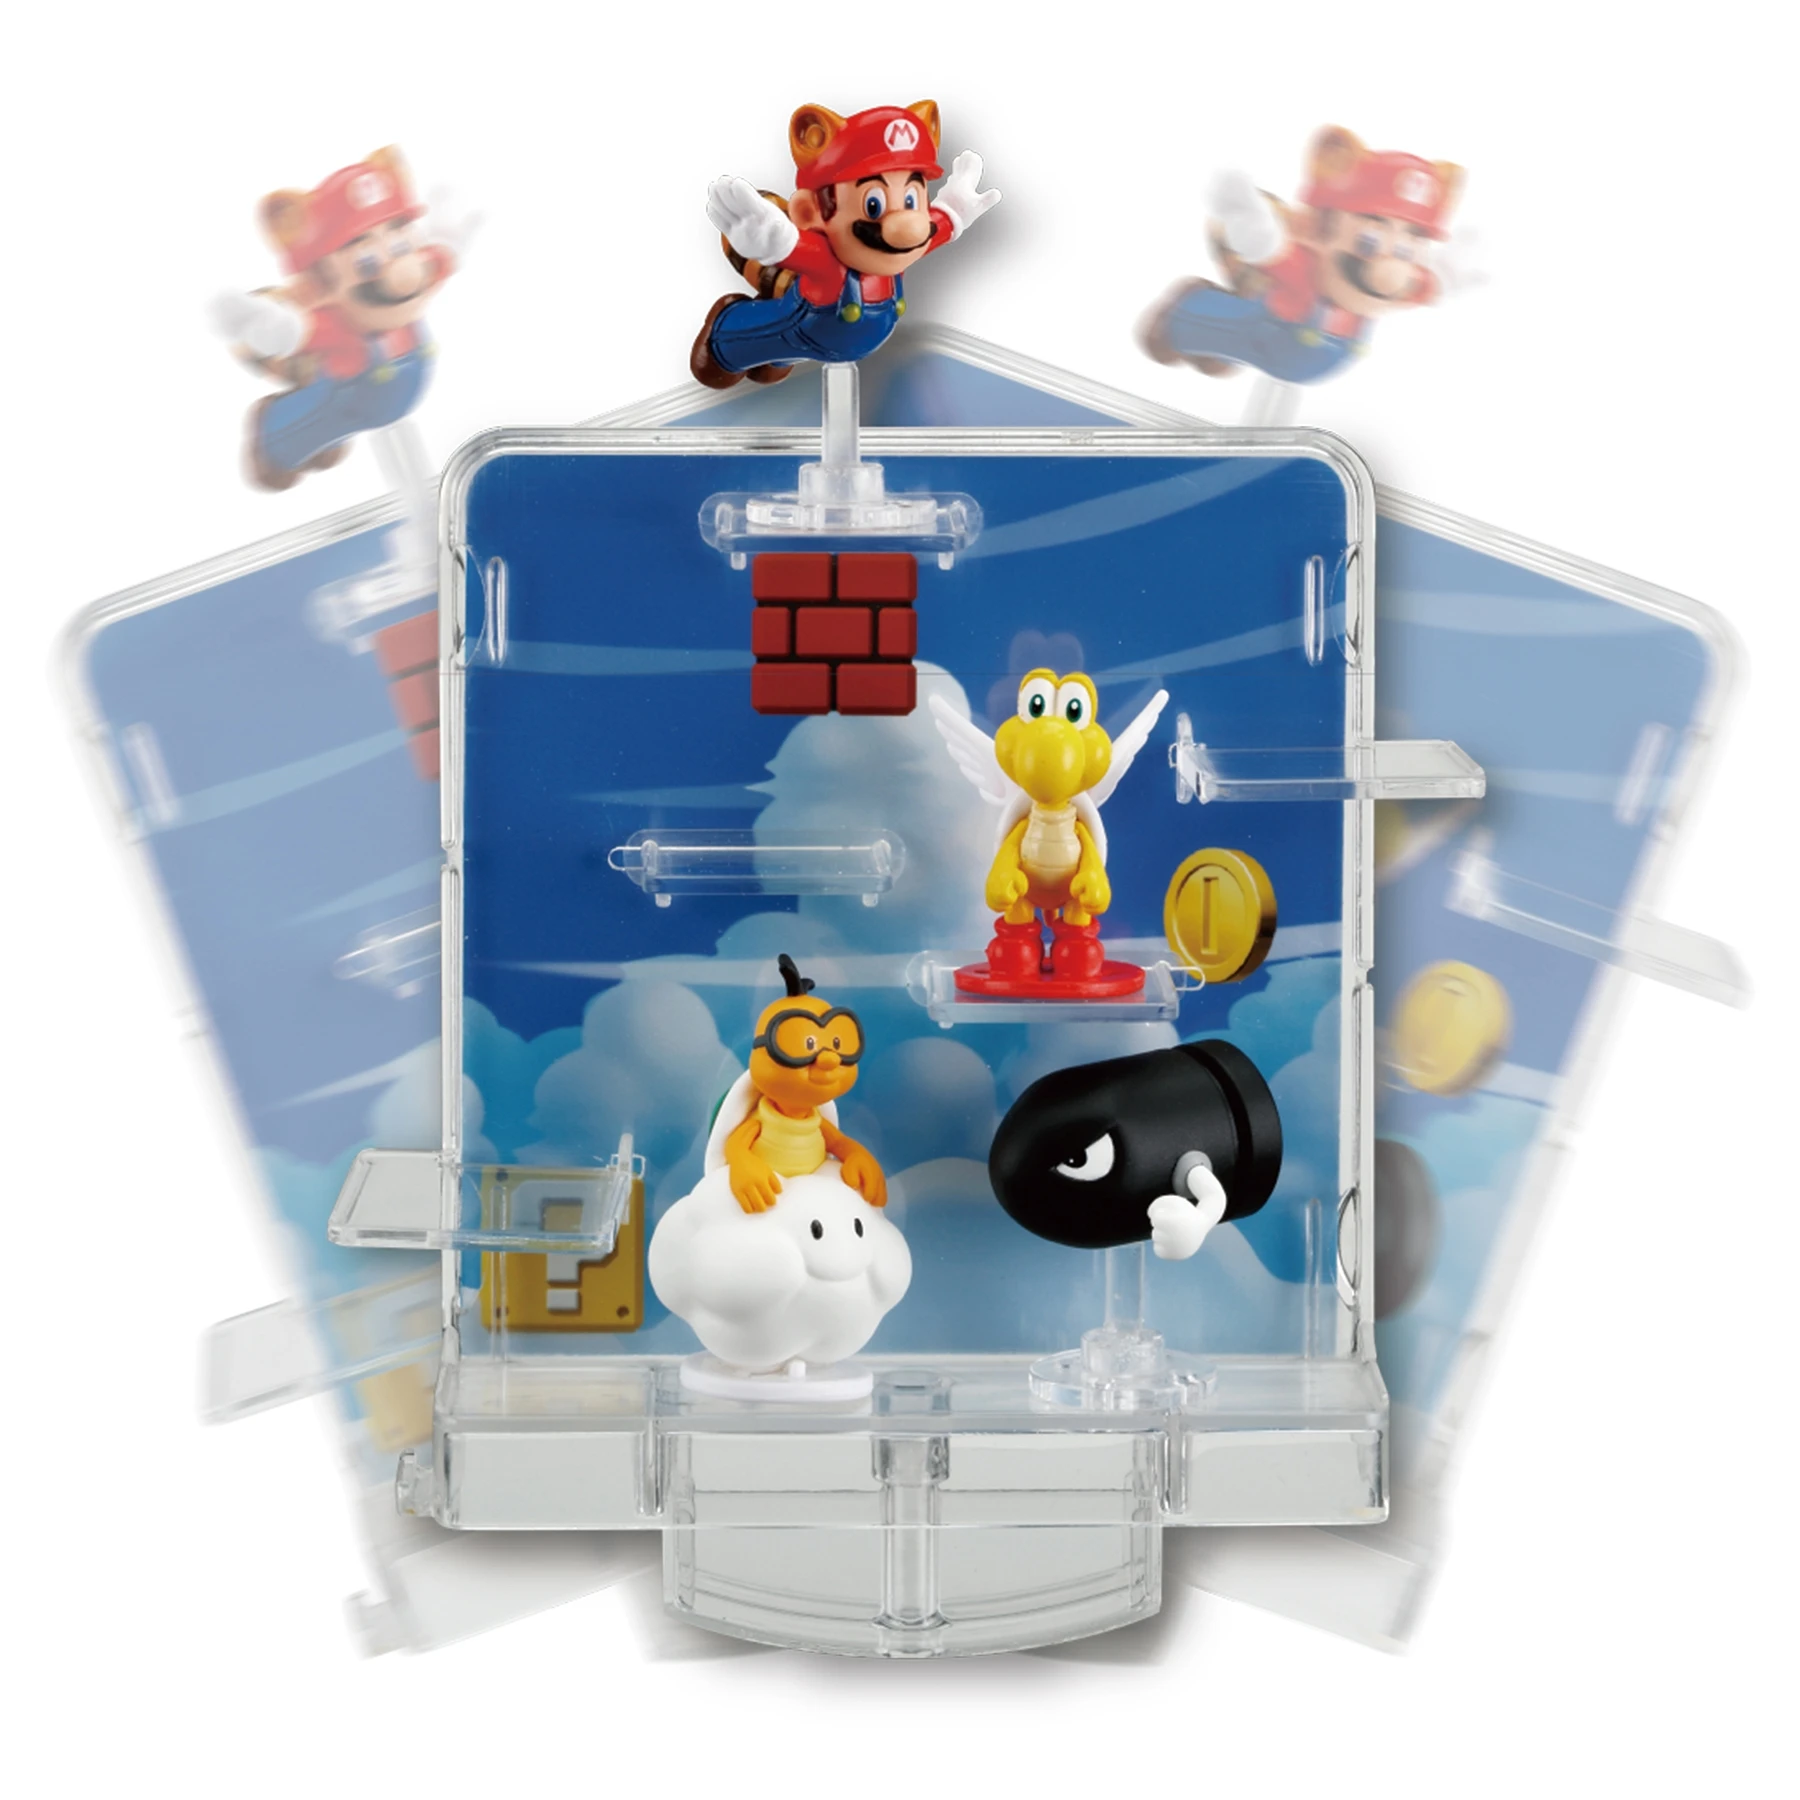 Super Mario Платформы Плюс &quotУровень в облаках" арт.7391 Супер Марио Игровой набор